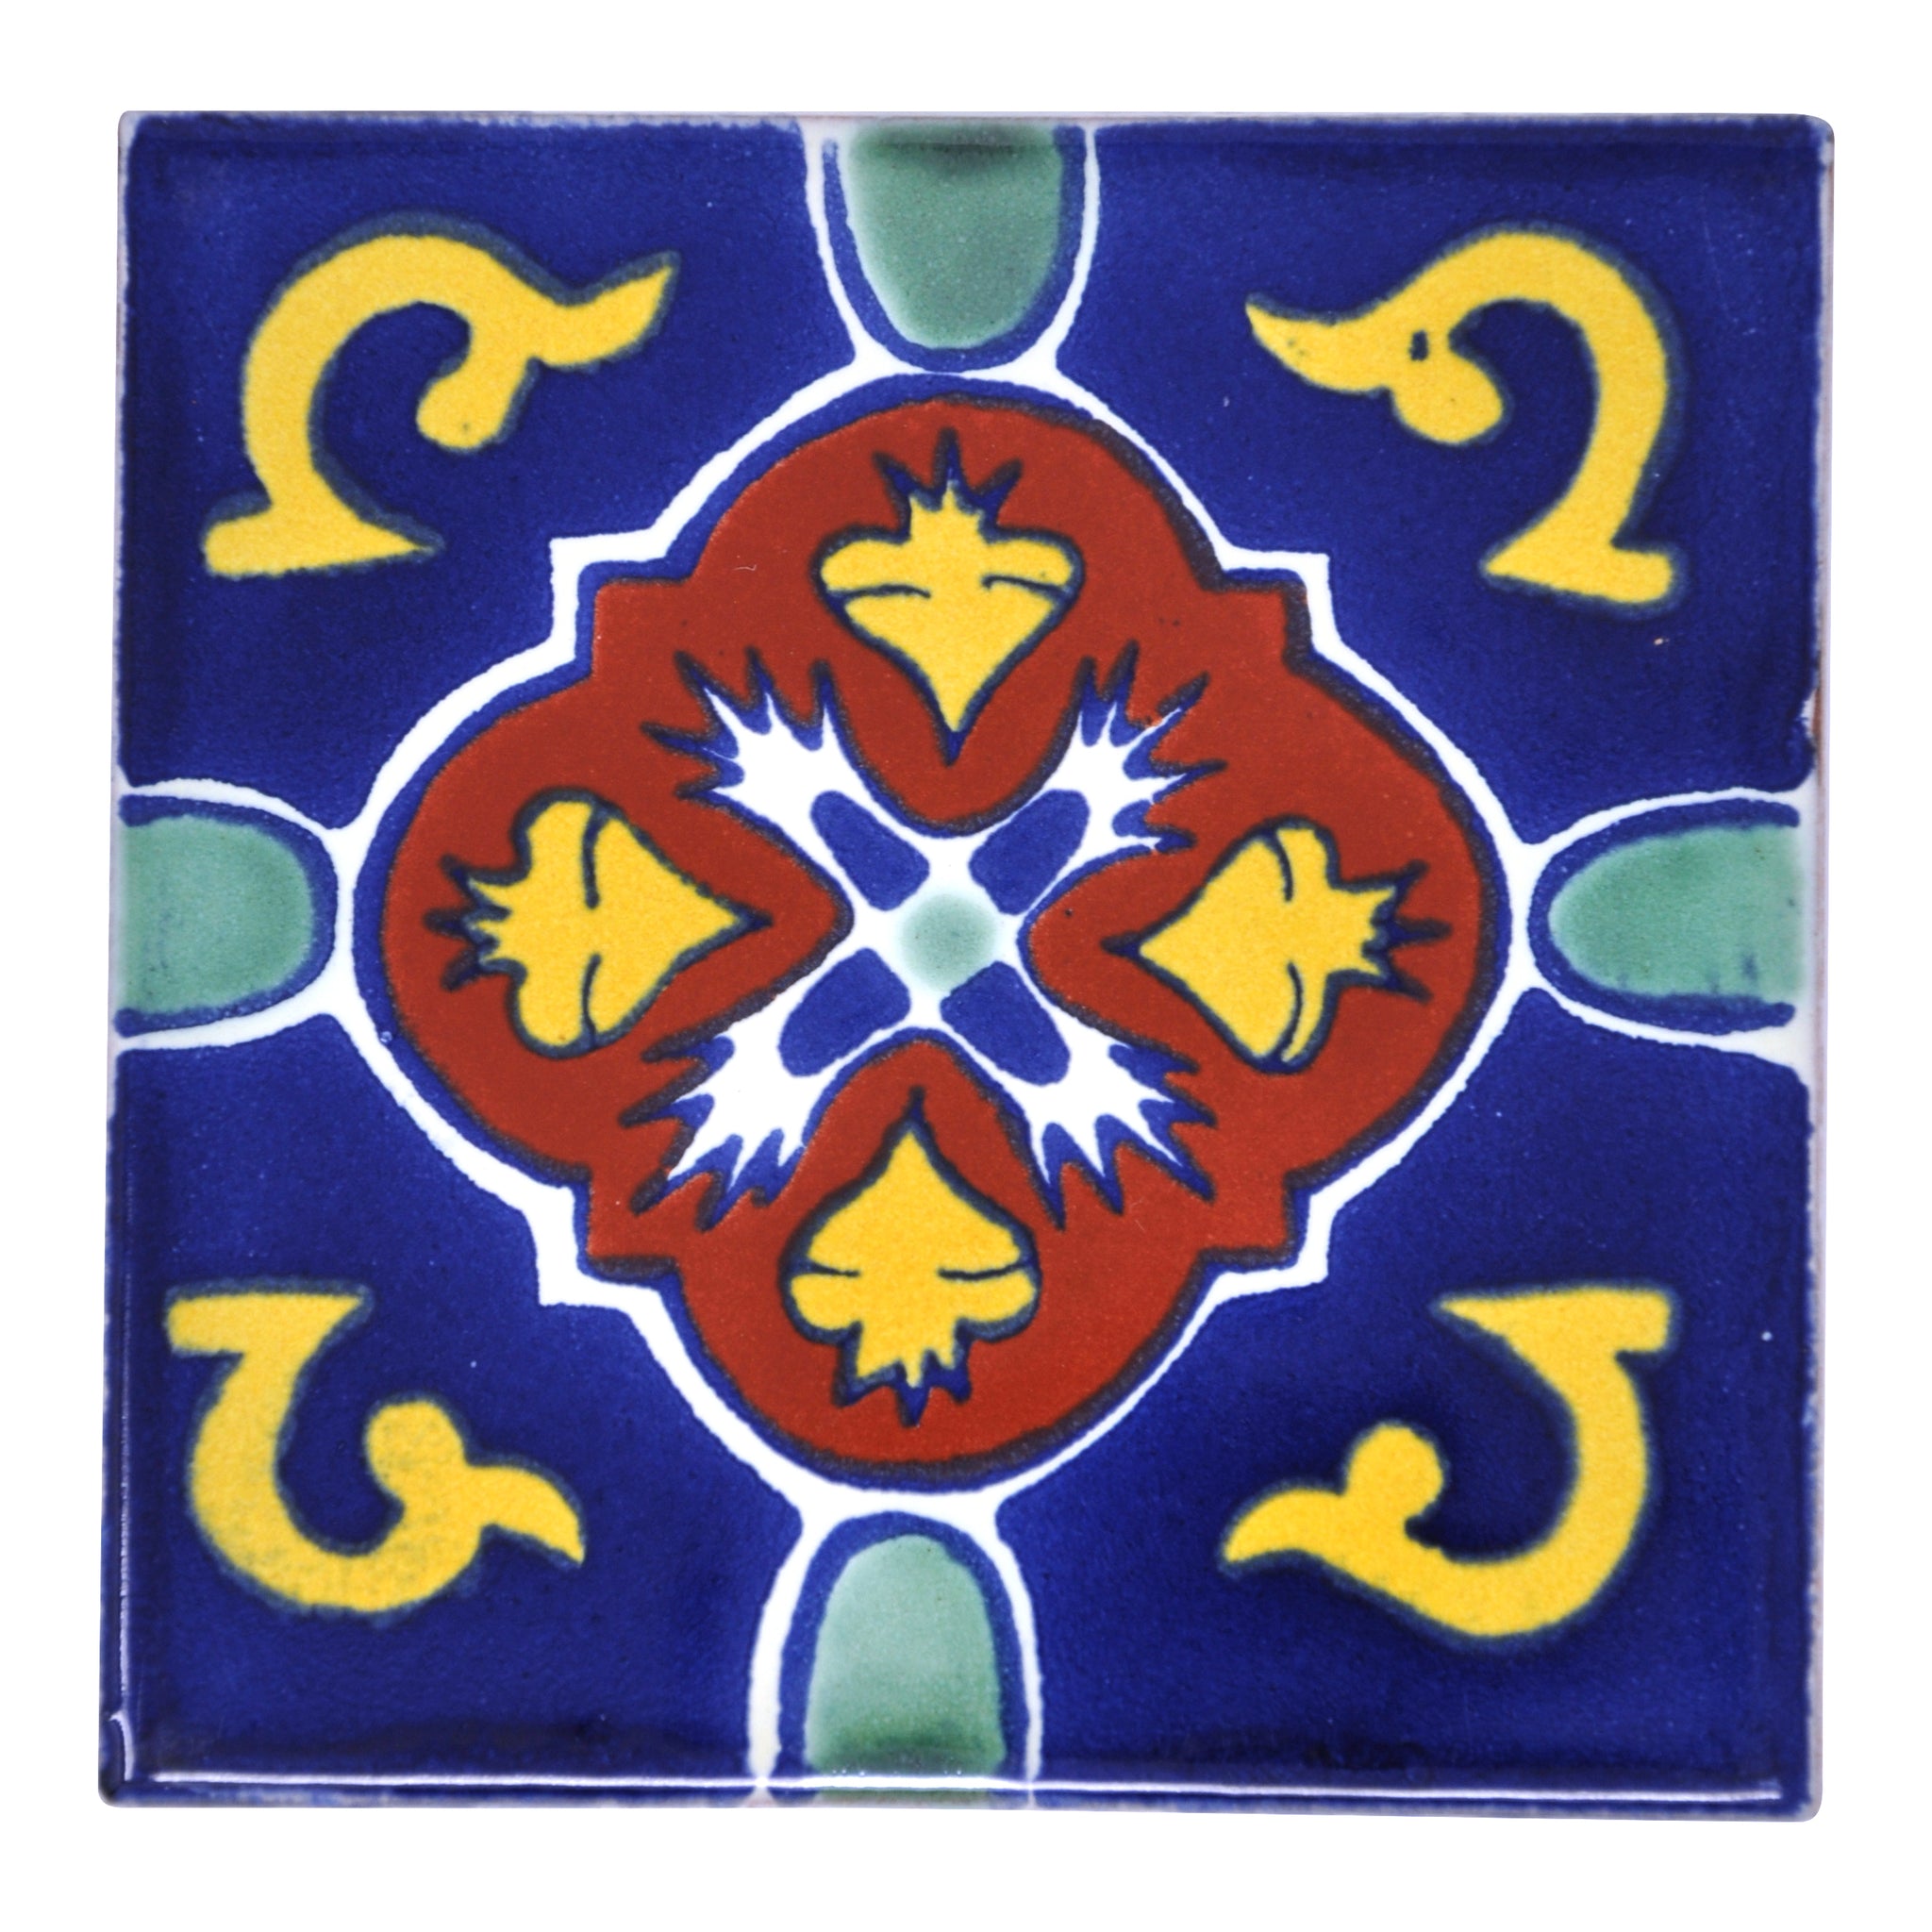 Domingo Handmade 10.5cm Tile